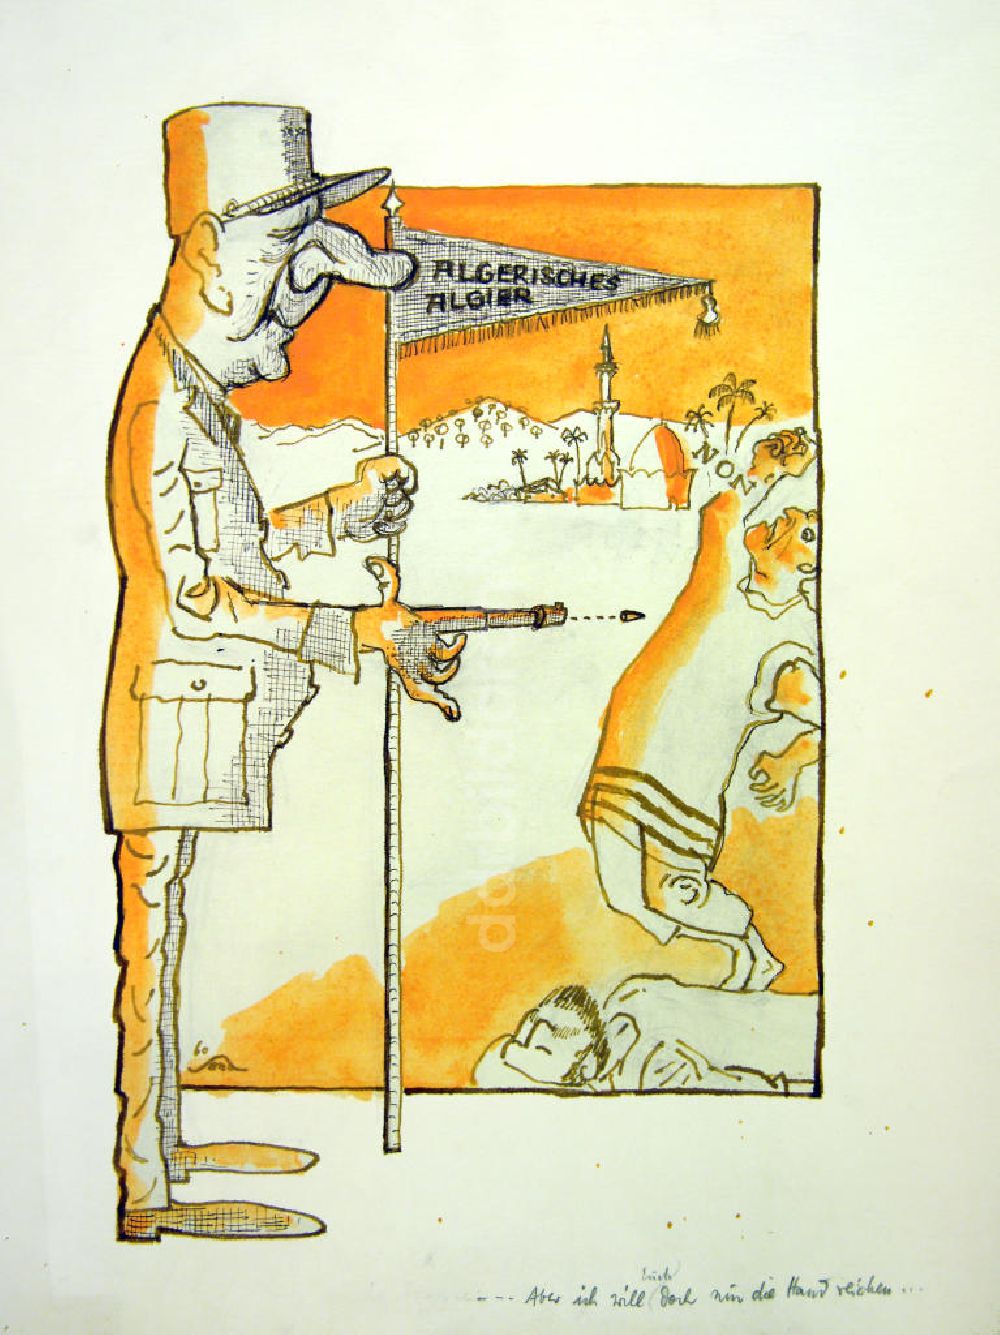 DDR-Bildarchiv: Berlin - Zeichnung von Herbert Sandberg Algerisches Algier aus dem Jahr 1960